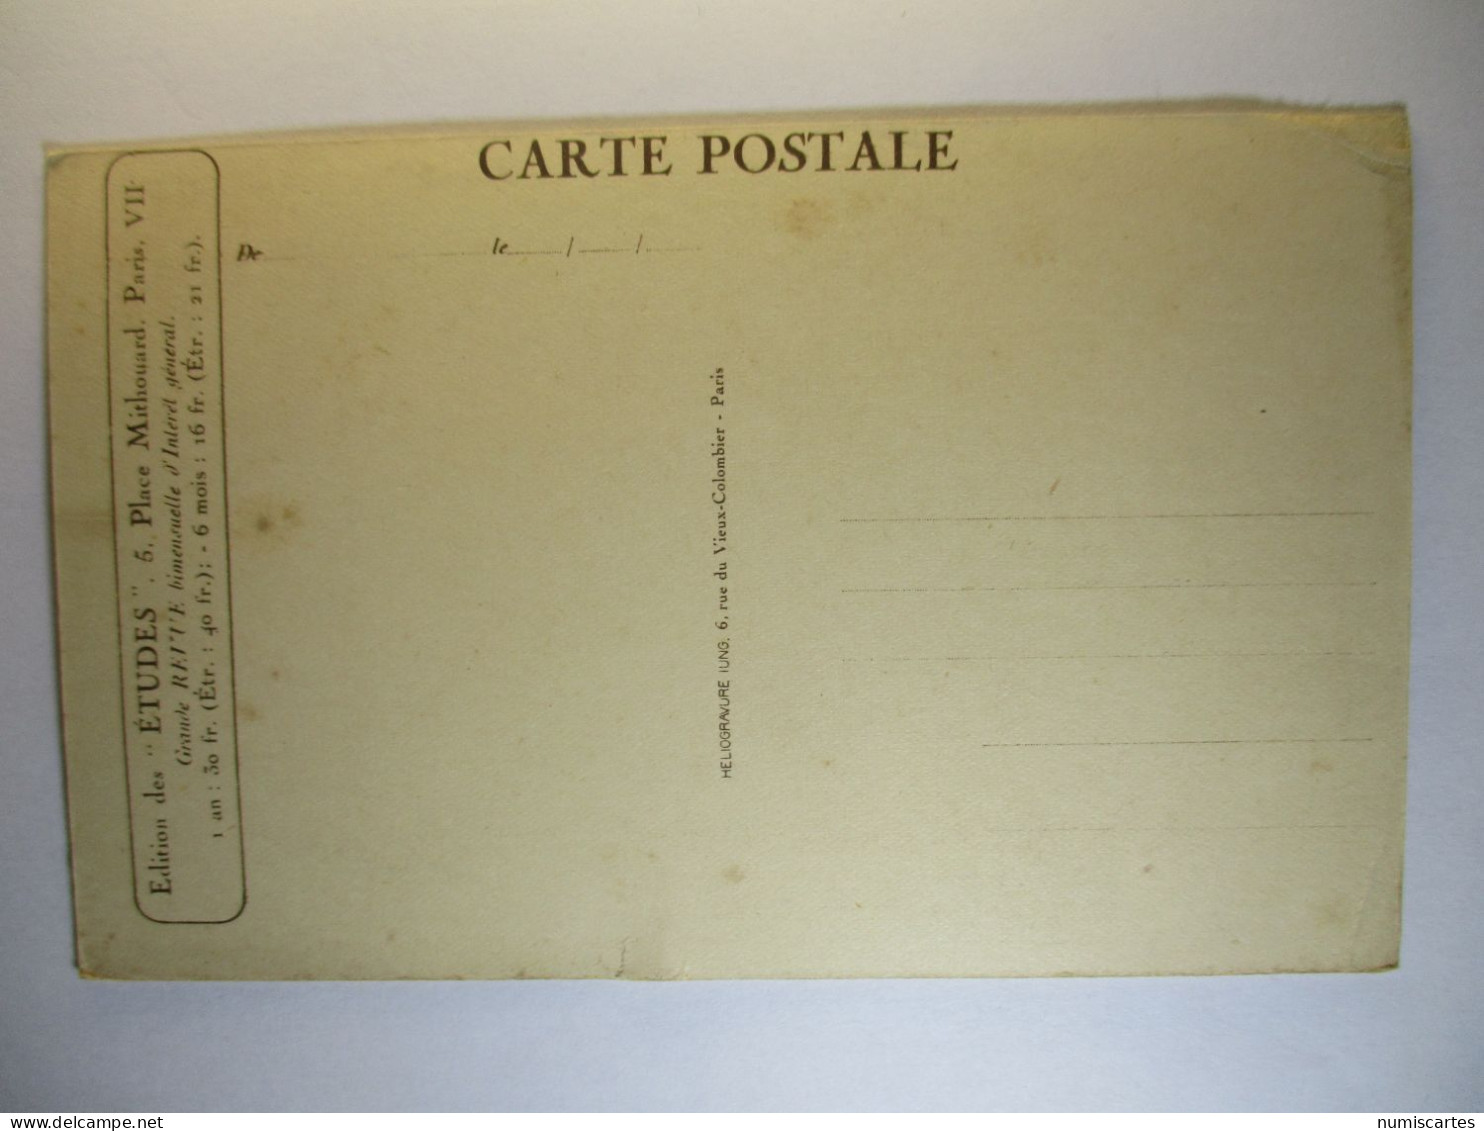 Carte Postale Chateau De Mesnieres (76) Pavillon Central  ( Petit Format Non Circulée) - Mesnières-en-Bray